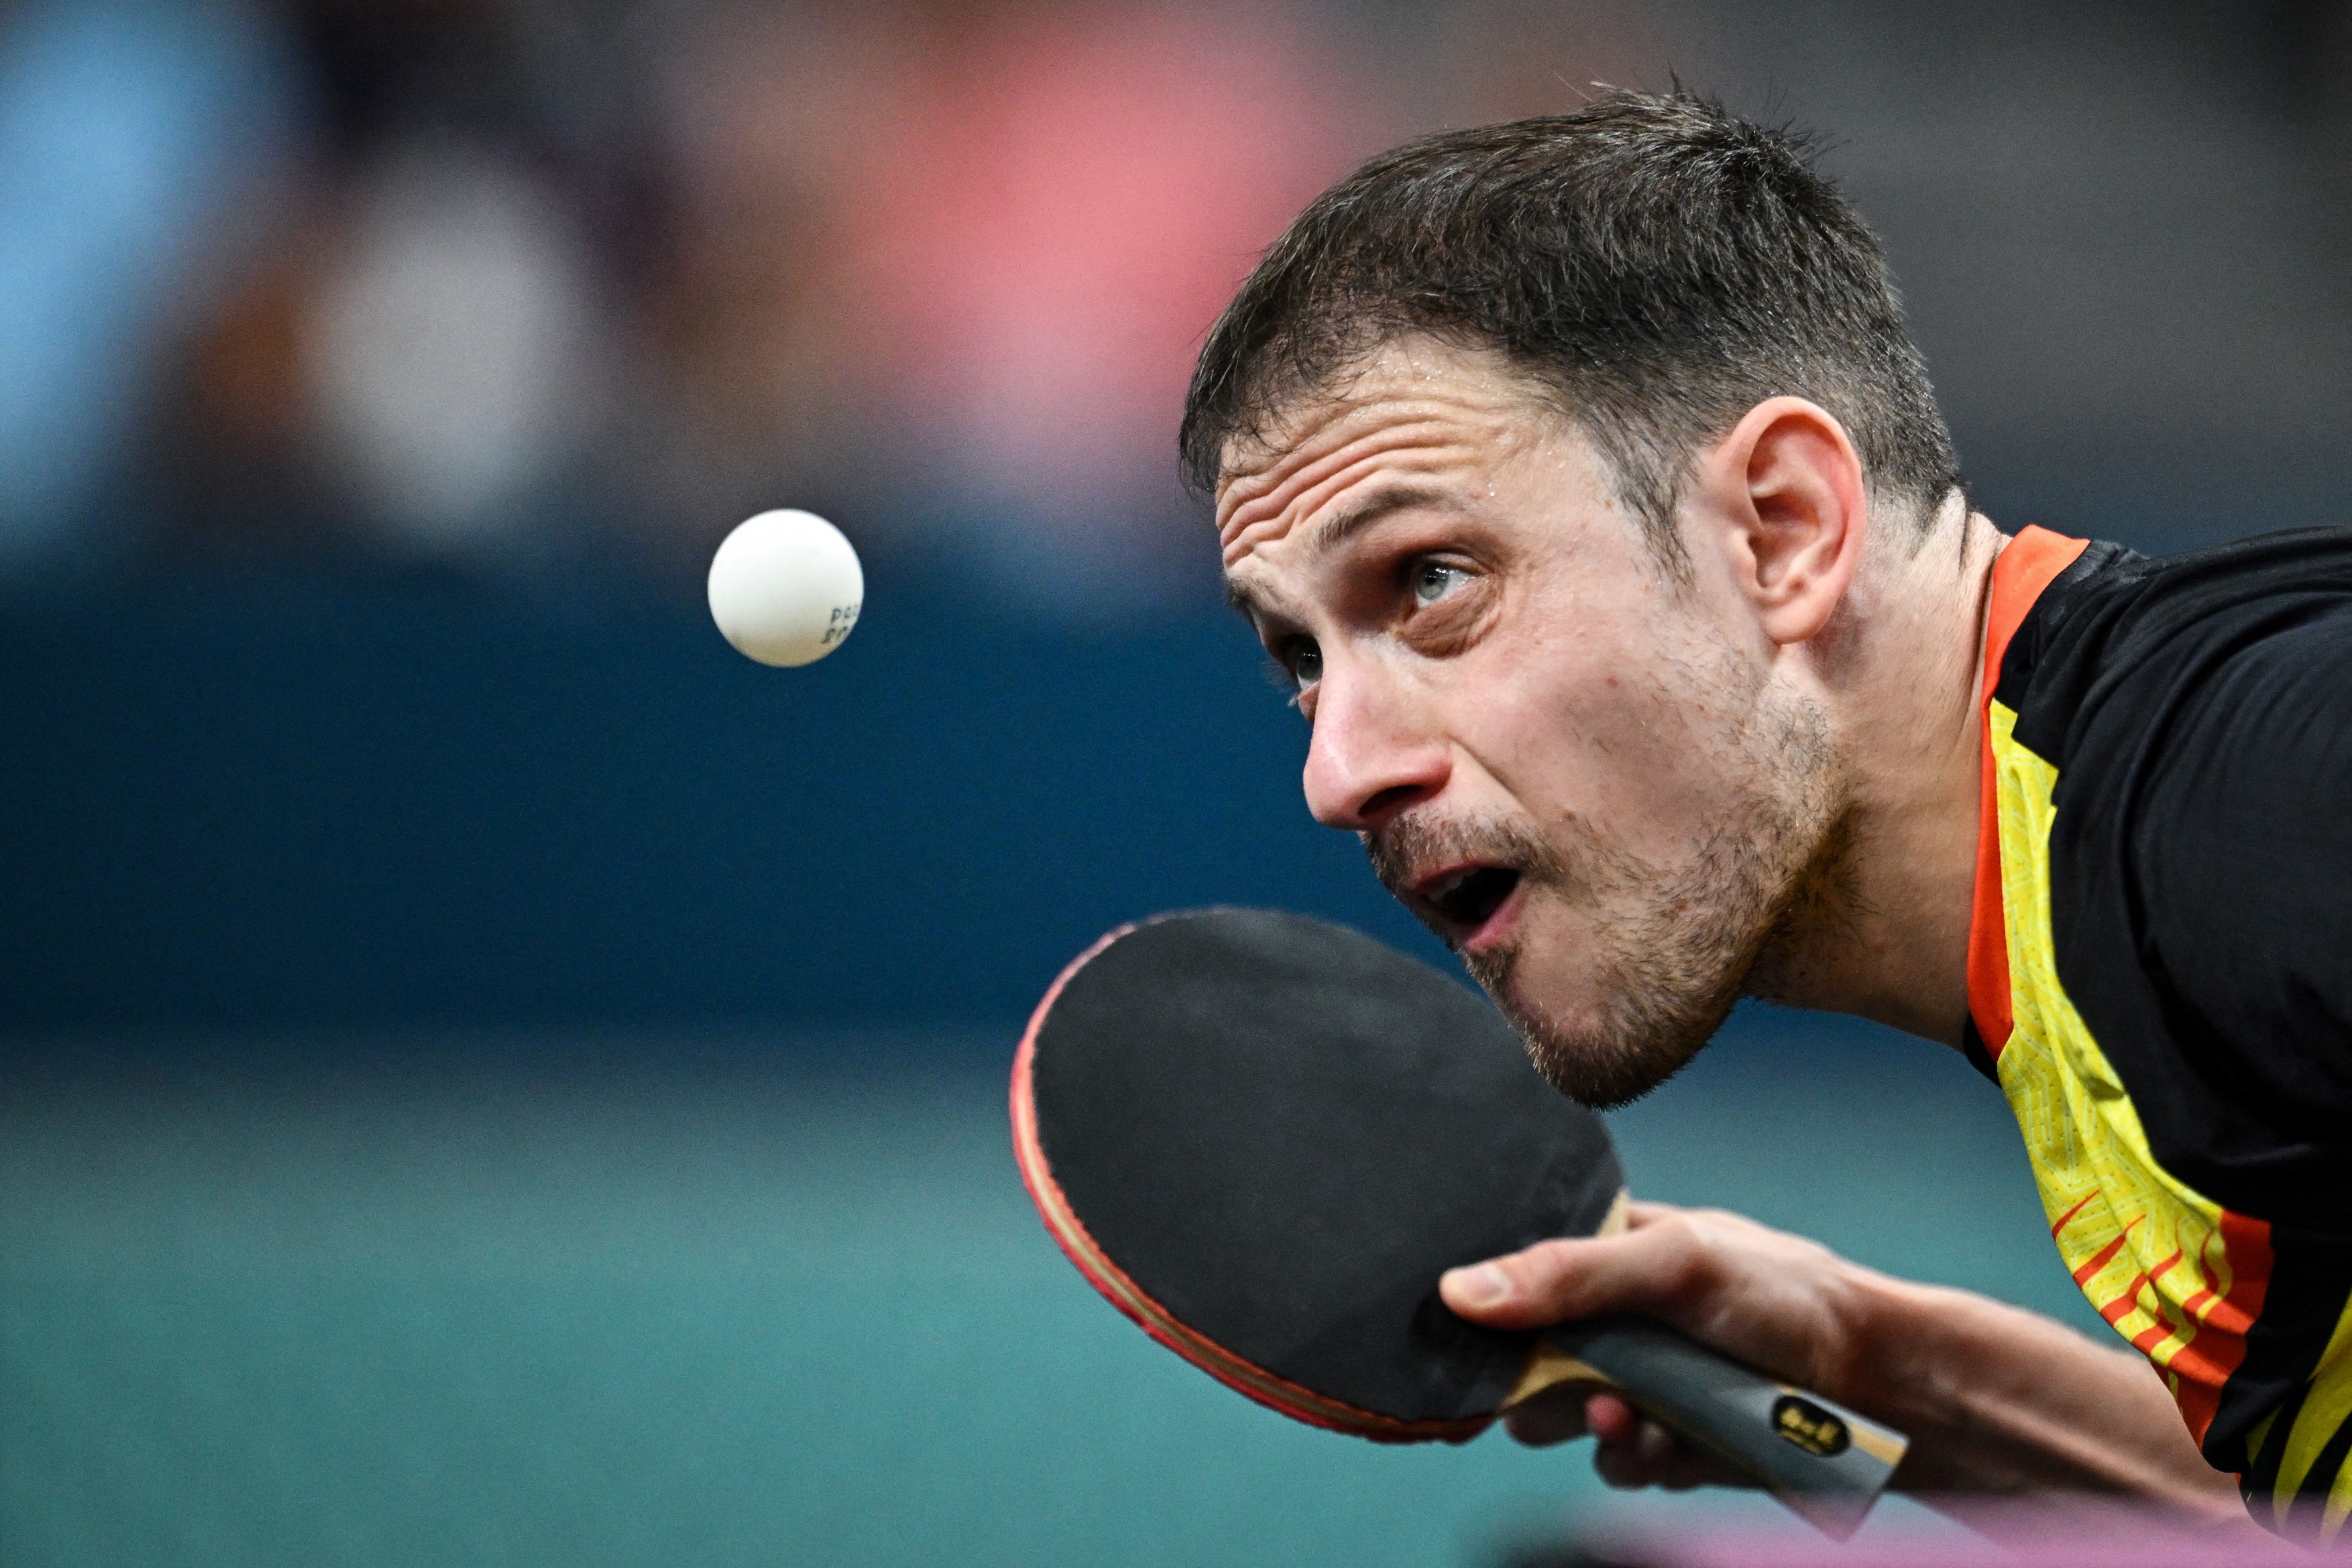 Ovidiu Ionescu a fost învins în primul tur la tenis de masă, în proba de simplu, la Jocurile Olimpice